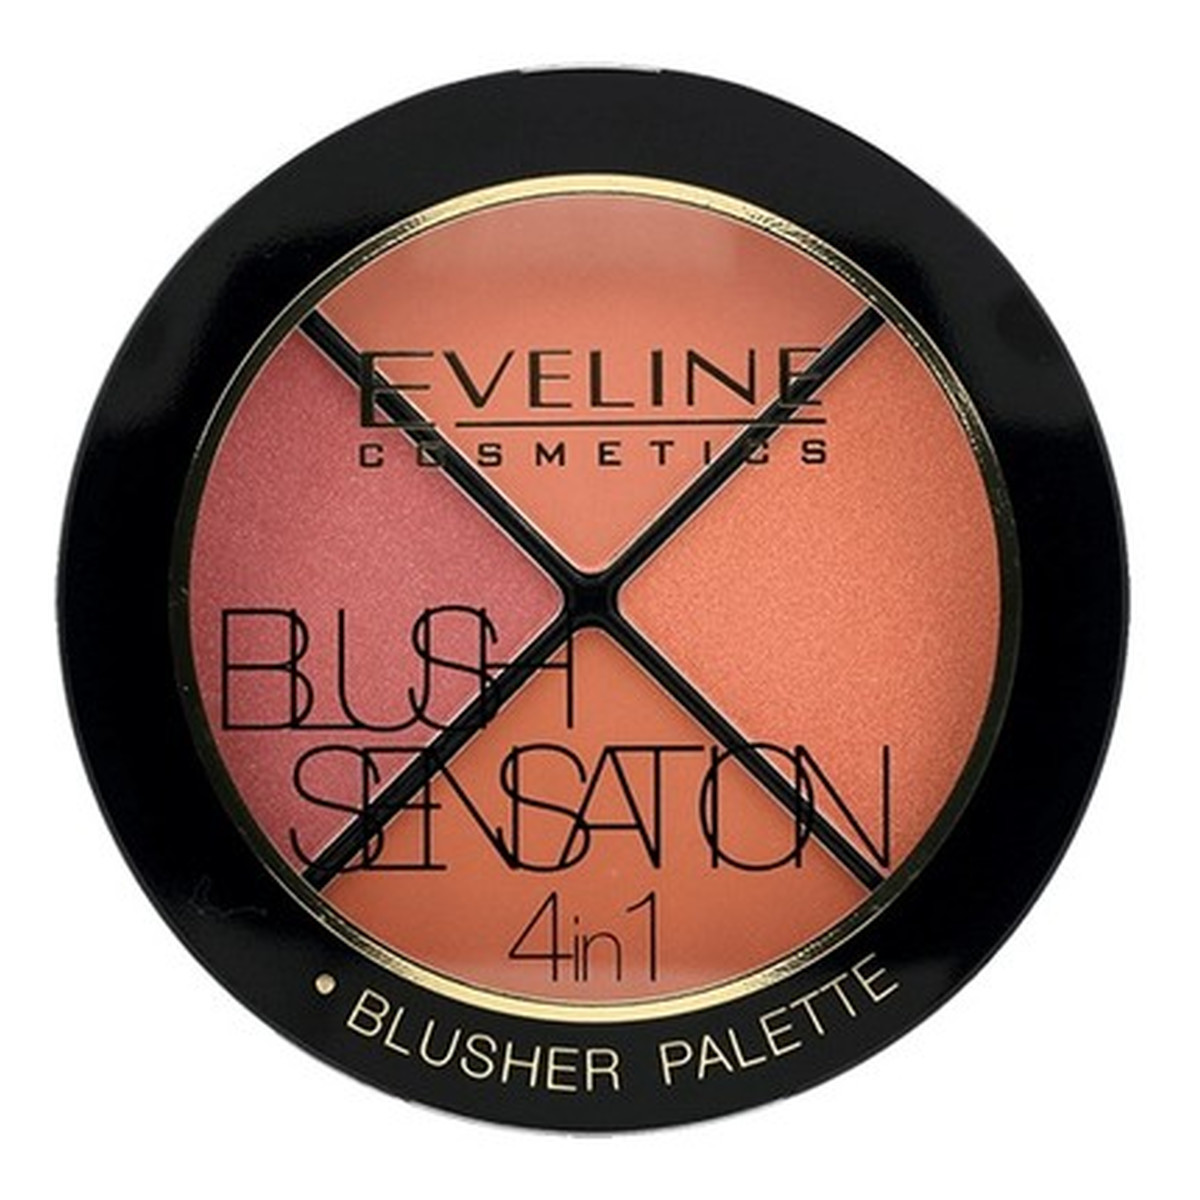 Eveline Blush Sensation 4w1 paleta róży do modelowania twarzy 12g